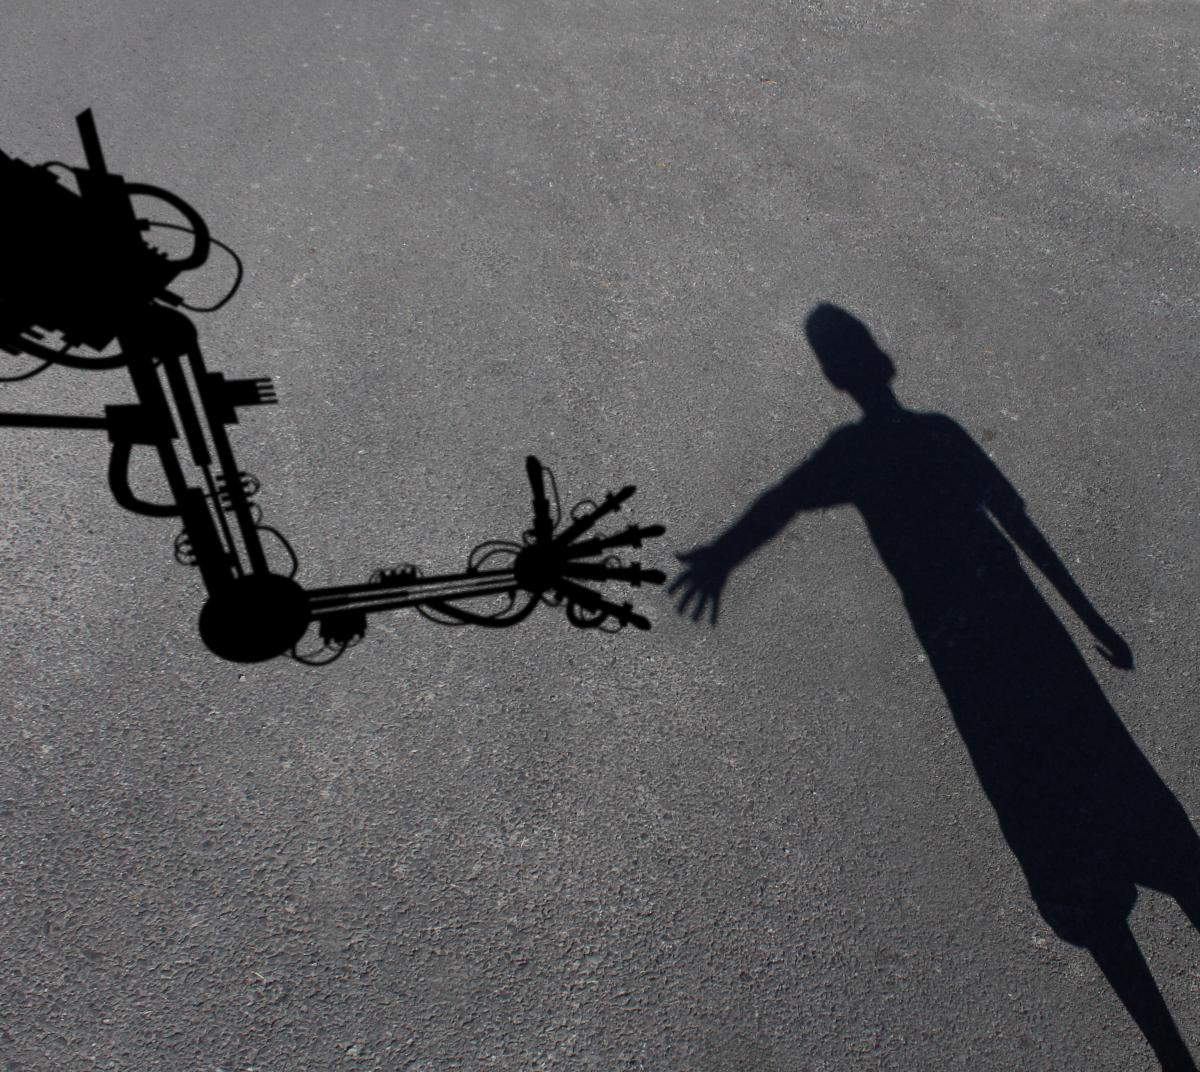 Robot and shadow image